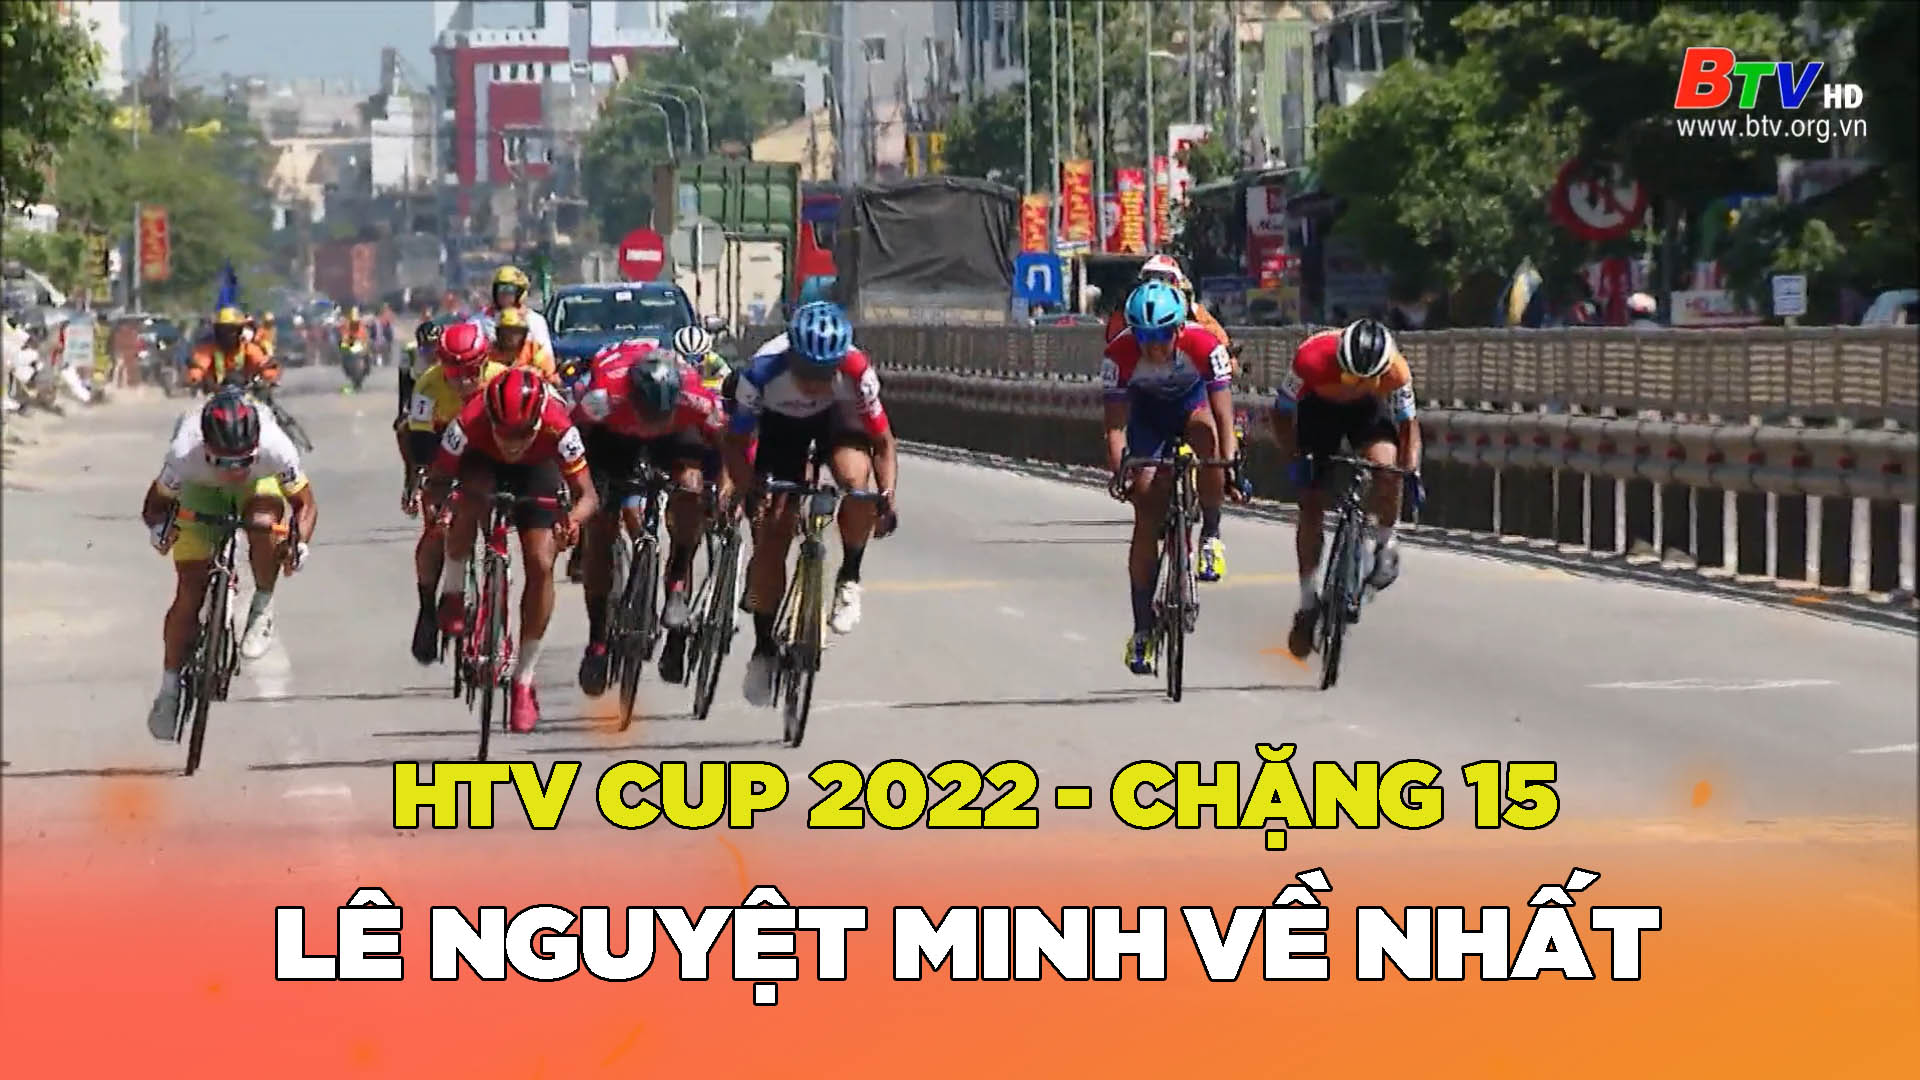 Cuộc đua xe đạp Cúp Truyền hình TP.HCM năm 2022 – Lê Nguyệt Minh thắng chặng 15